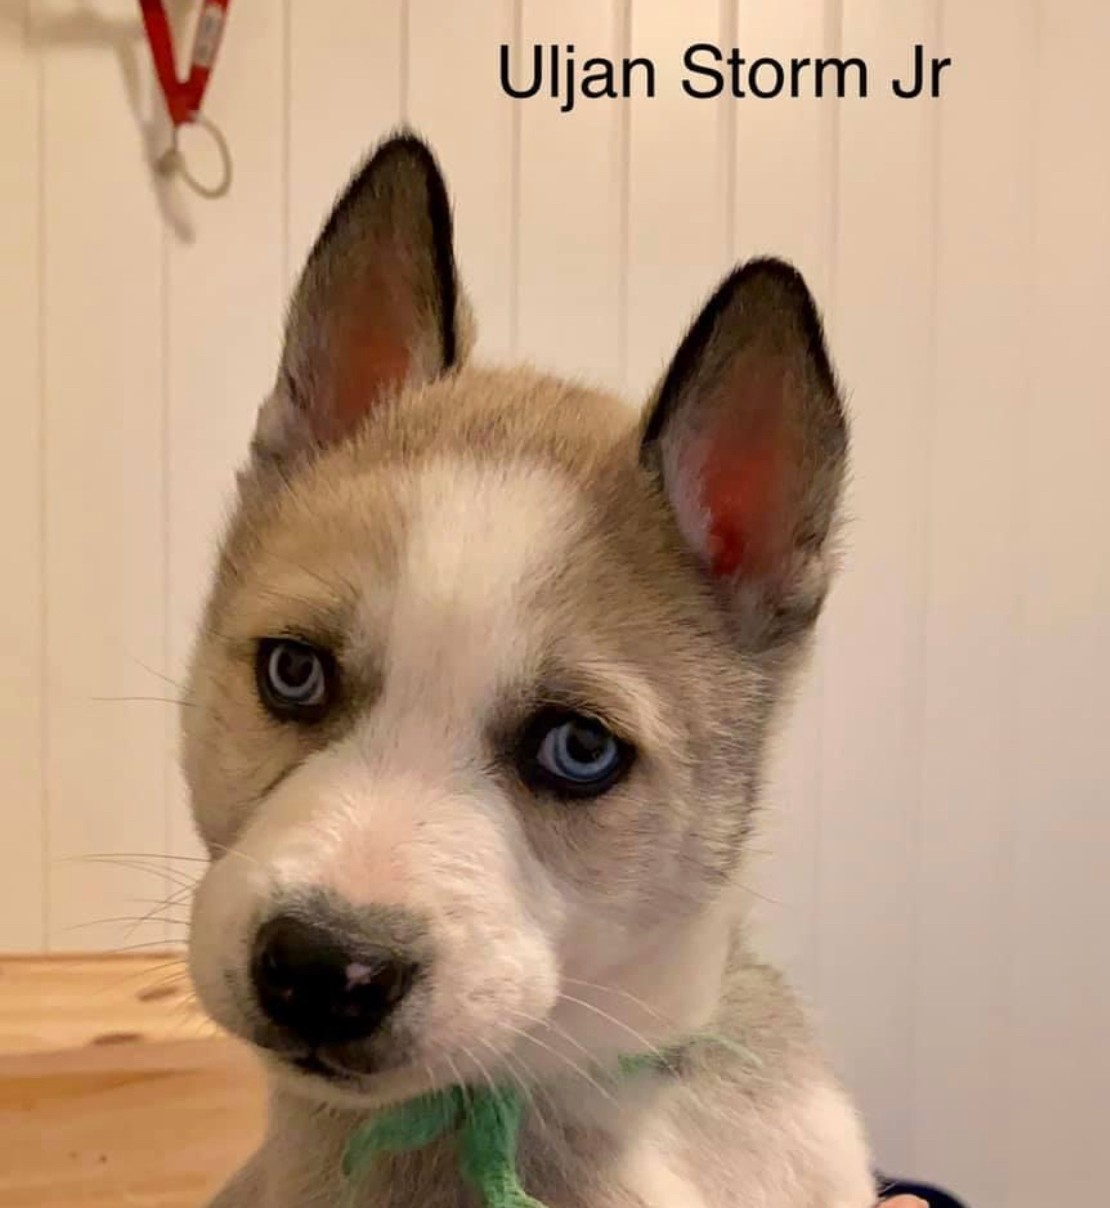 Uljan Storm Jr